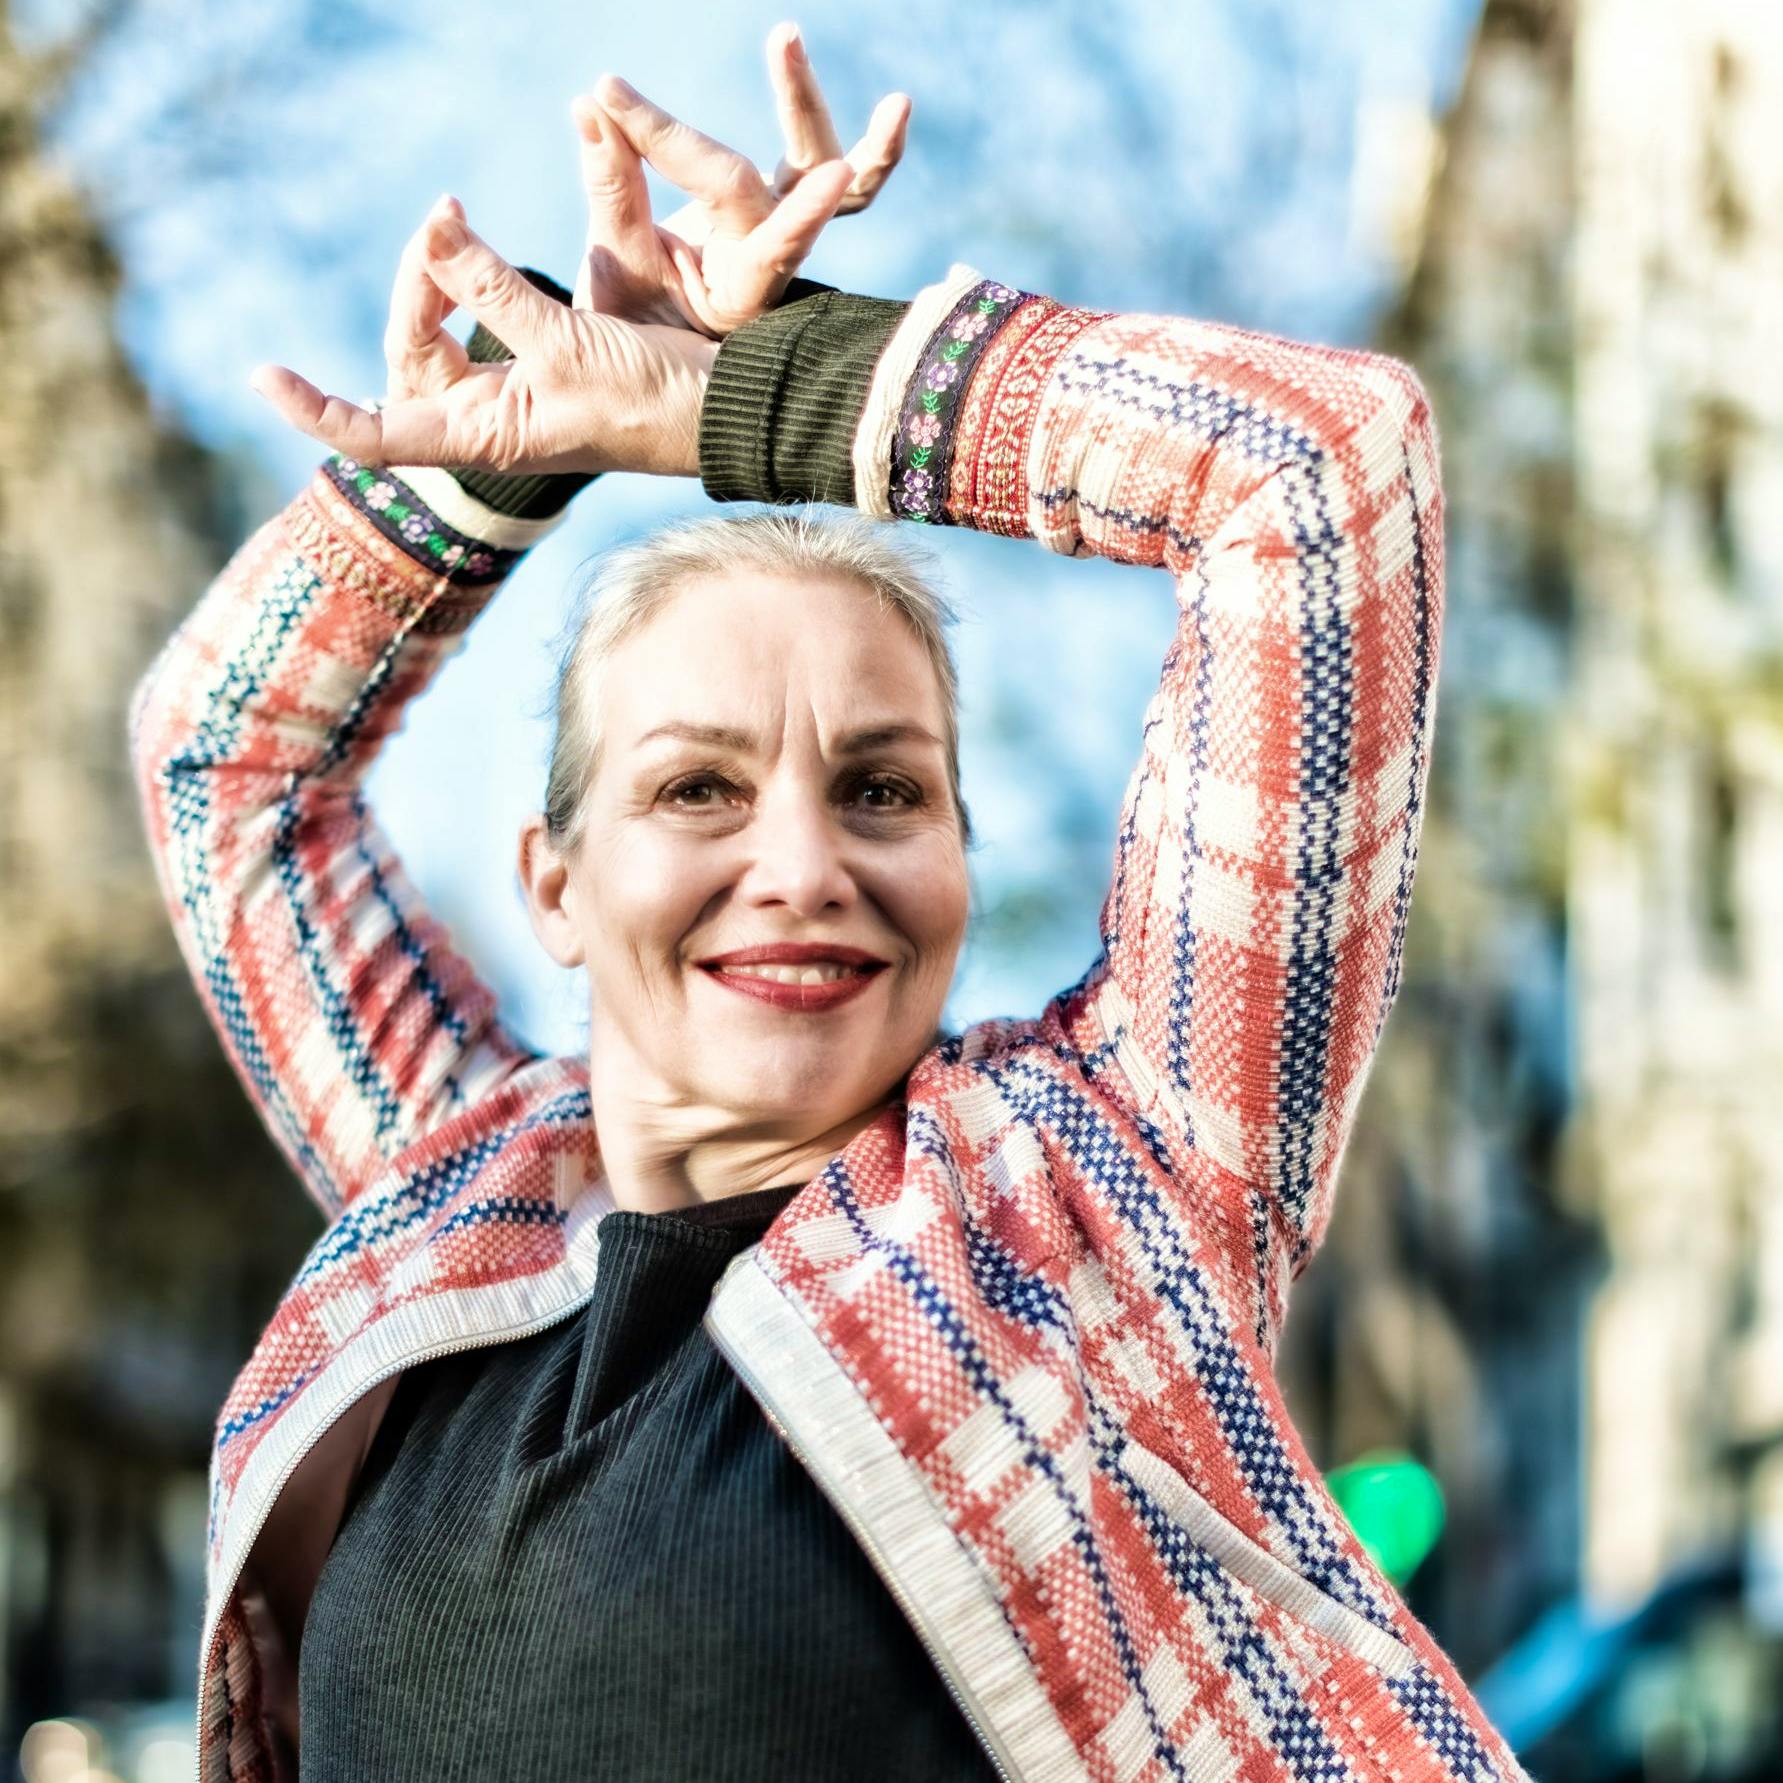 Nina Corti kann 2022 ihr 50-jähriges Bühnen- und Karrierejubiläum feiern. Sie ist bis heute international als Flamenco-Tänzerin und Choreografin mit namhaften Orchestern und Musikern unterwegs.